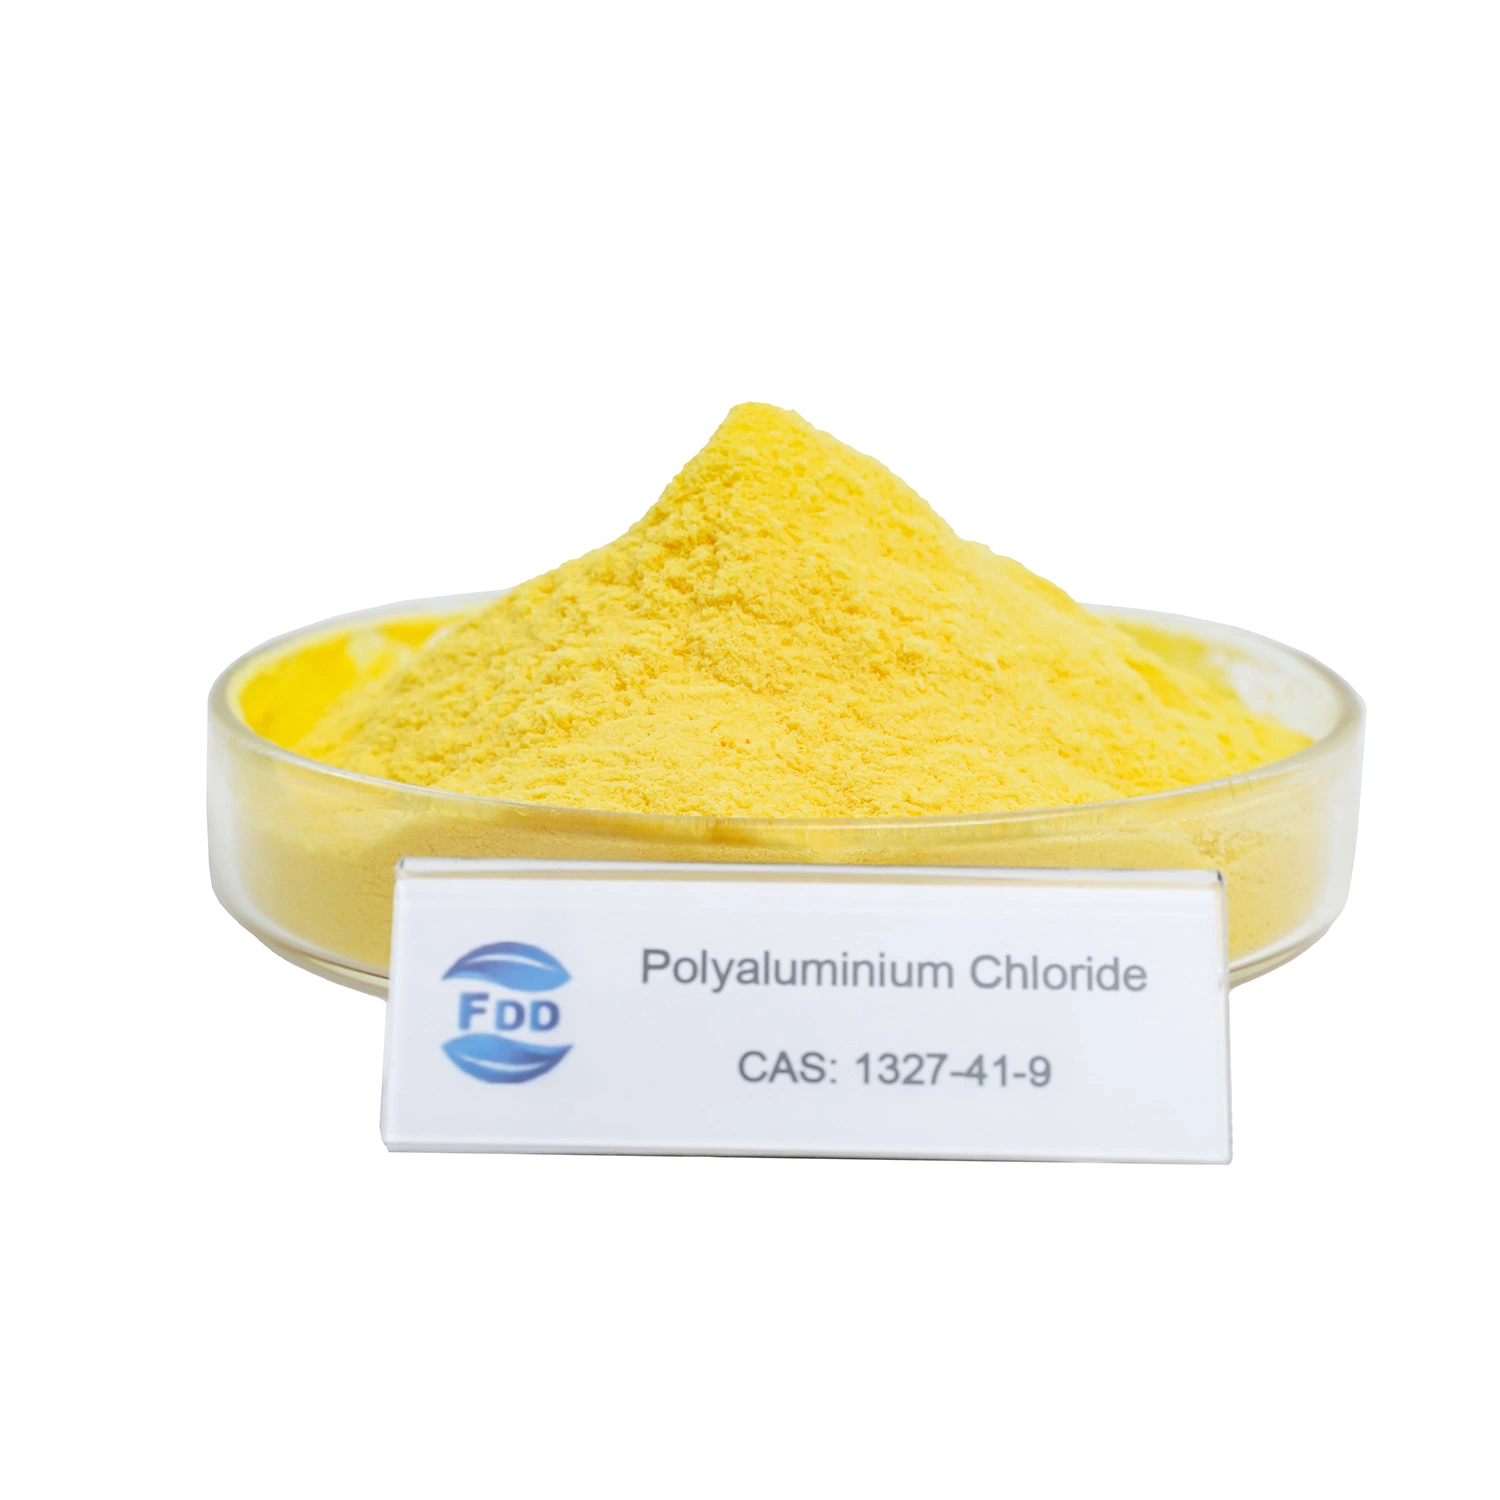 الشركة المصنعة البولي ألومنيوم كلوريد PAC 30% مواد معالجة المياه الكيميائية